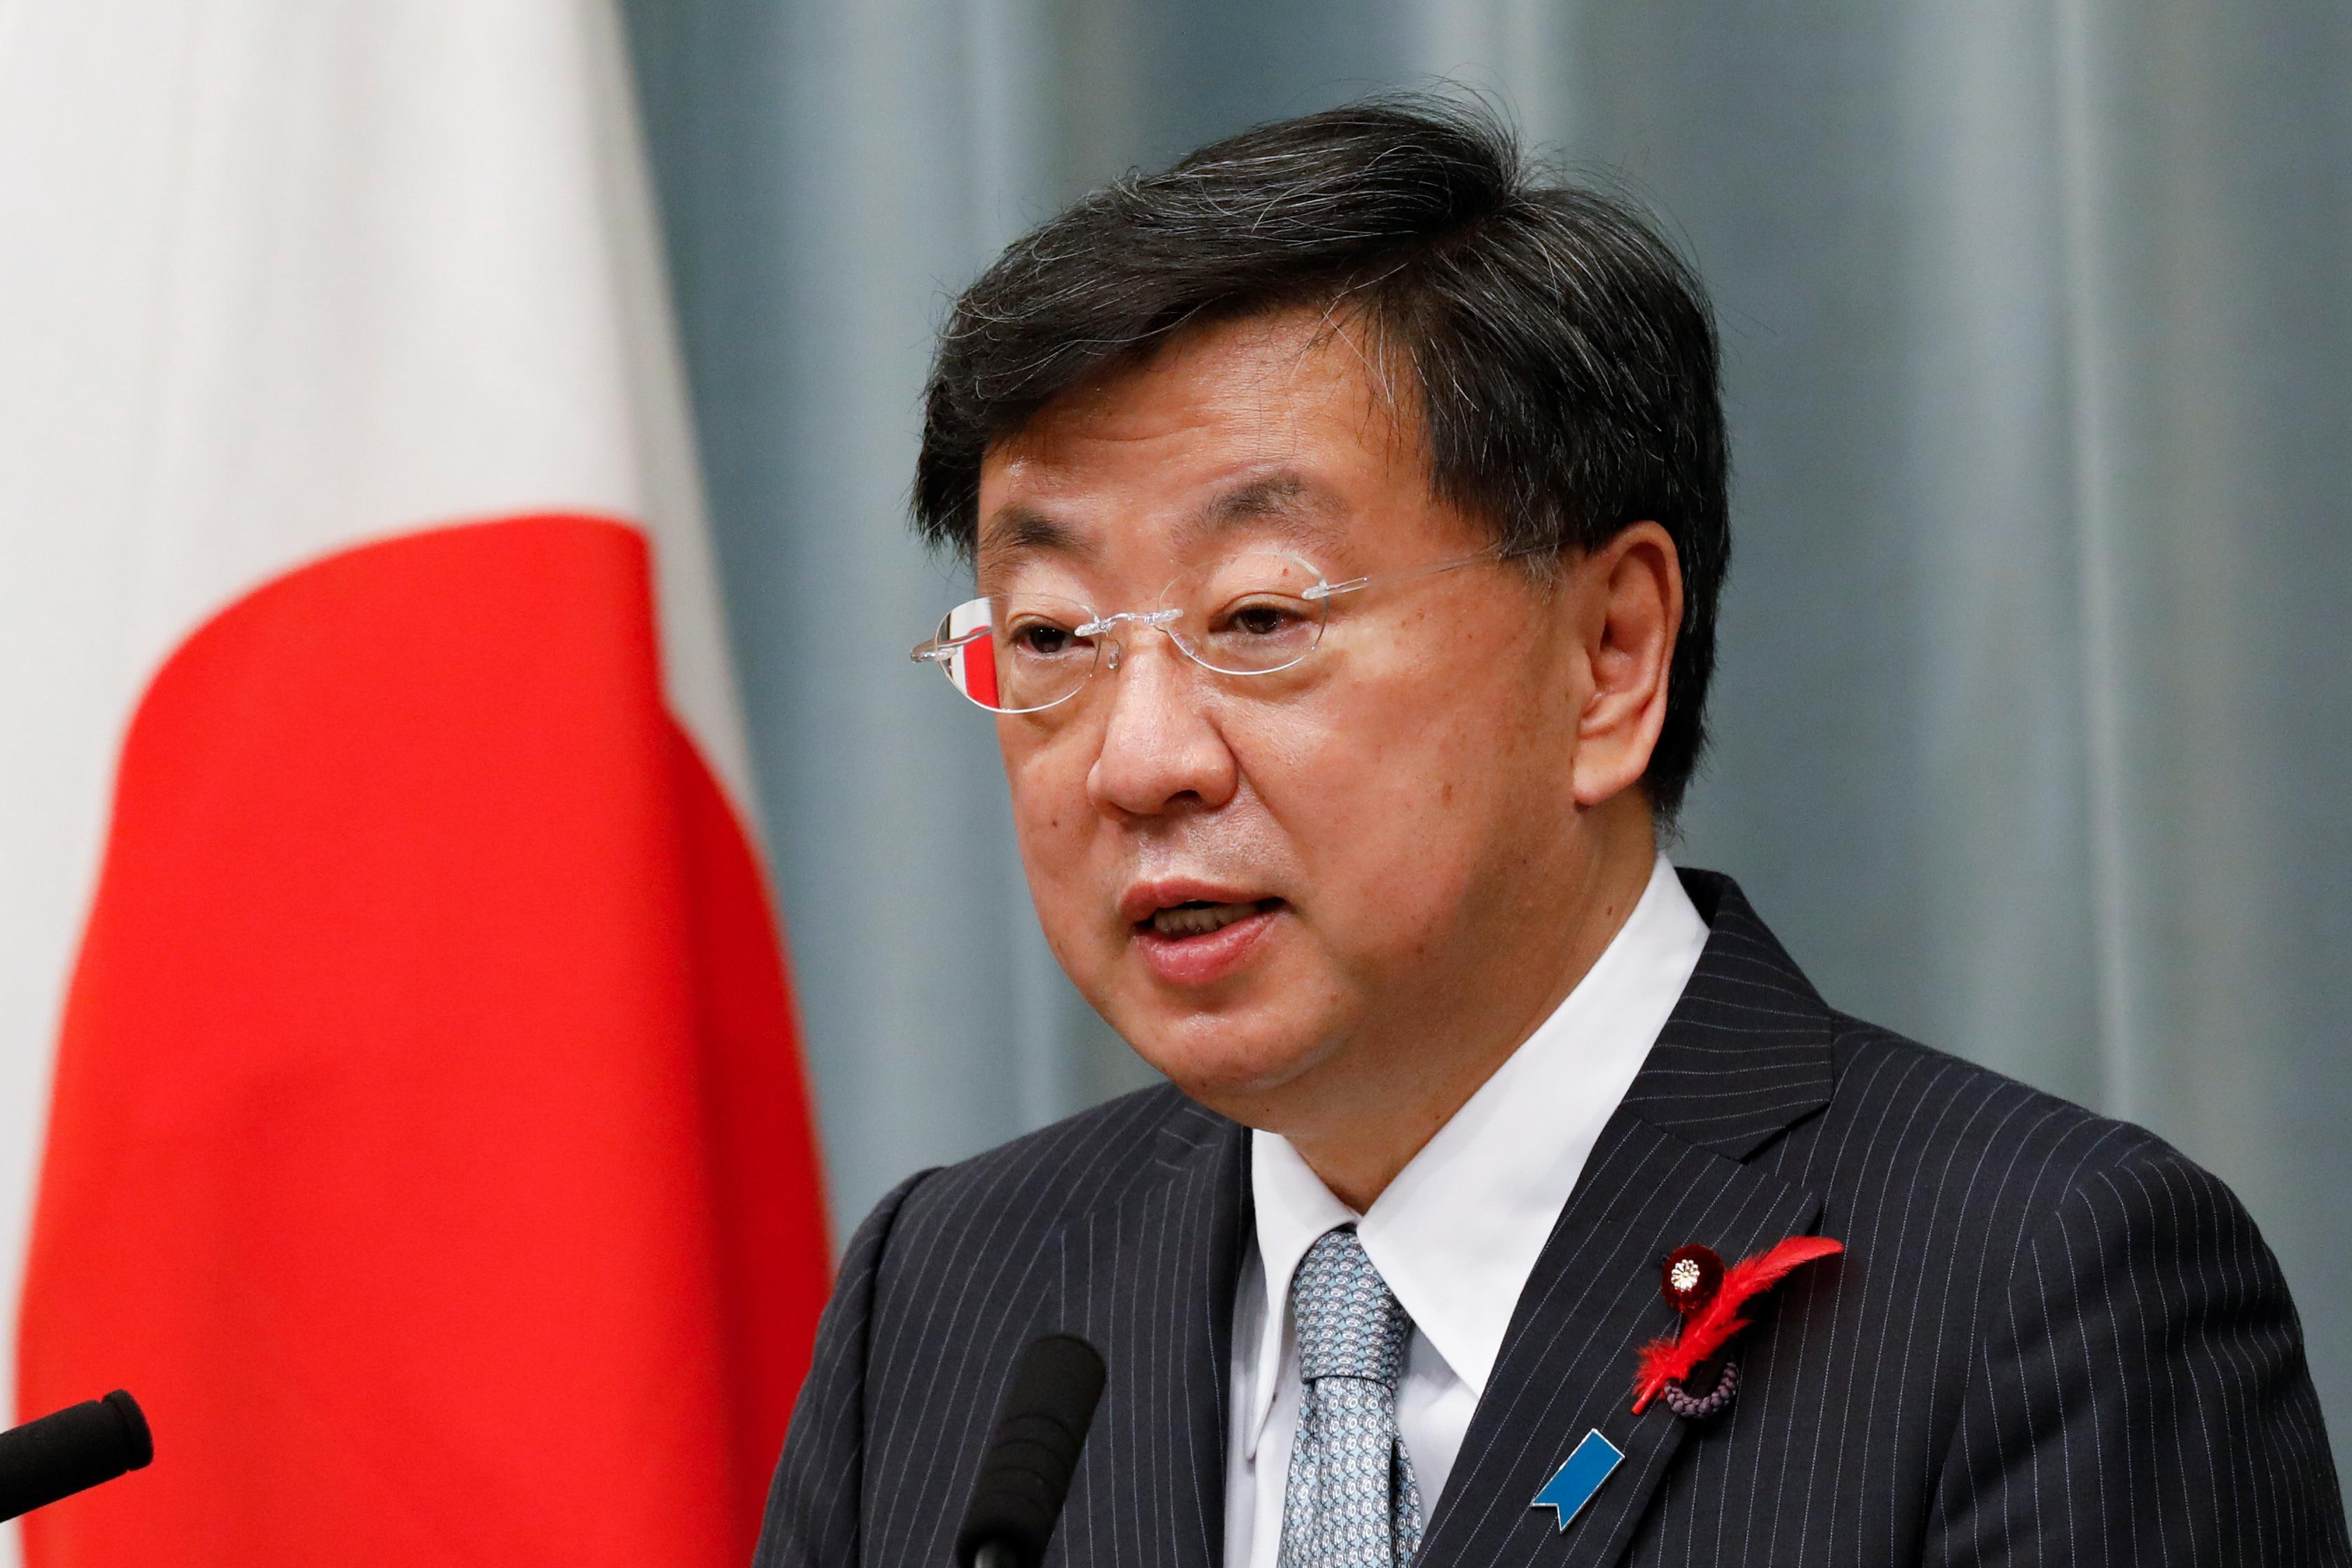 Sekretar vlade: Japan je duboko zabrinut zbog mogućnosti korištenja nuklearnog oružja